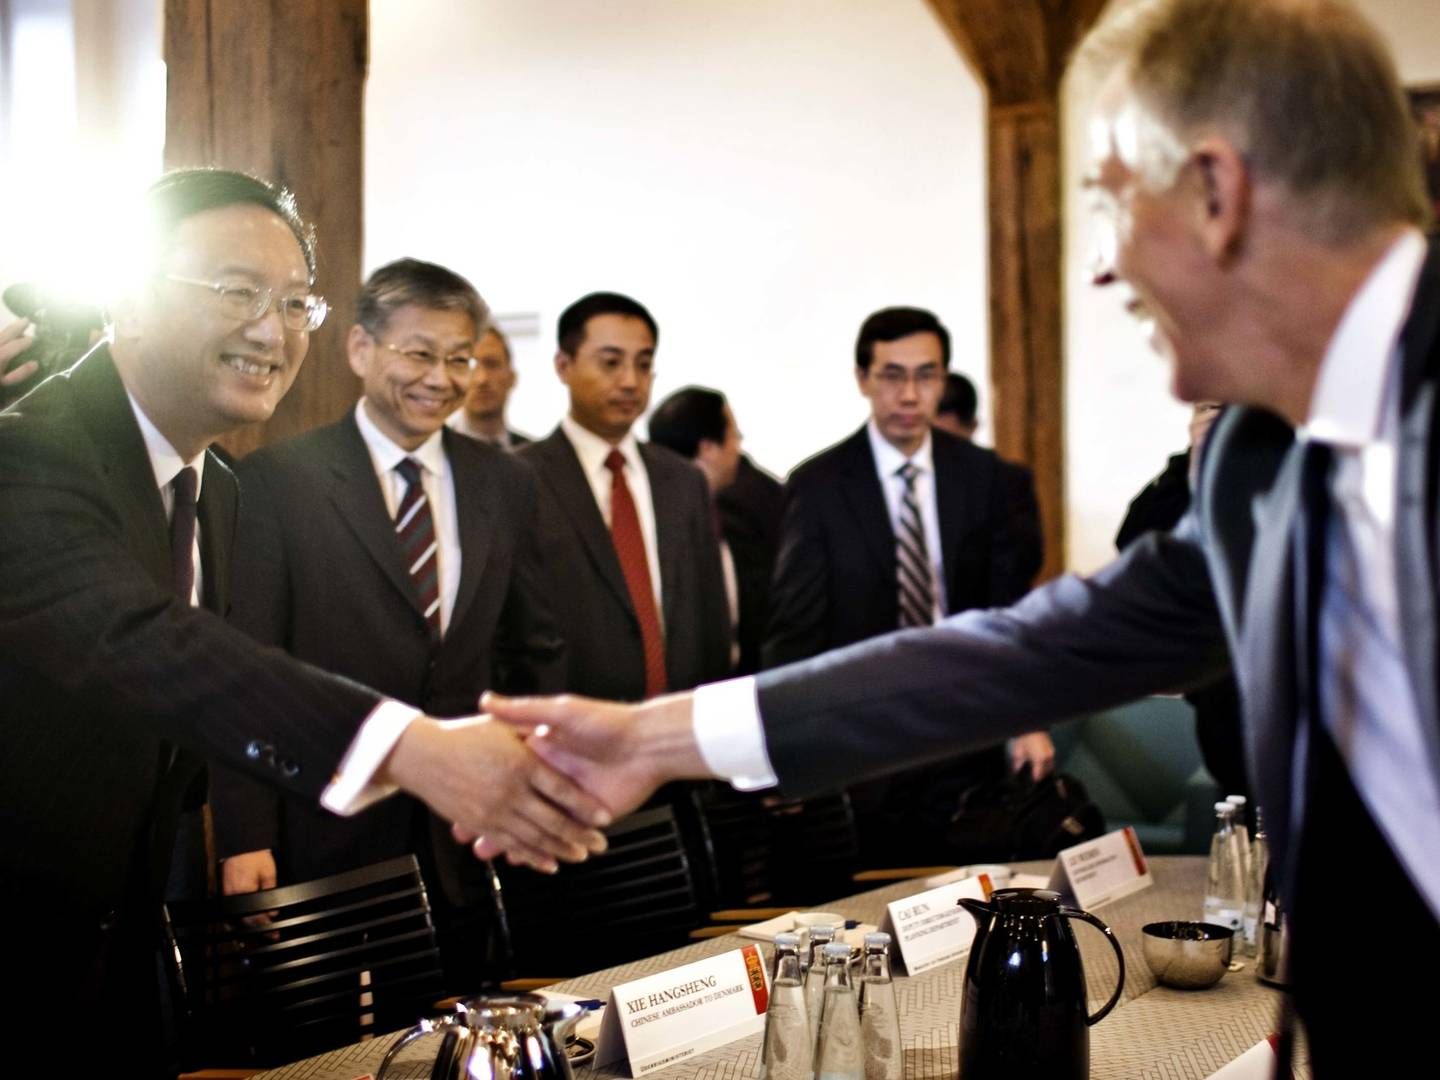 I 2011 var Kinas udenrigsminister Yang Jiechi på besøg i København hos sin danske kollega Villy Søvndal (SF). | Foto: Mathias Christensen/Politiken